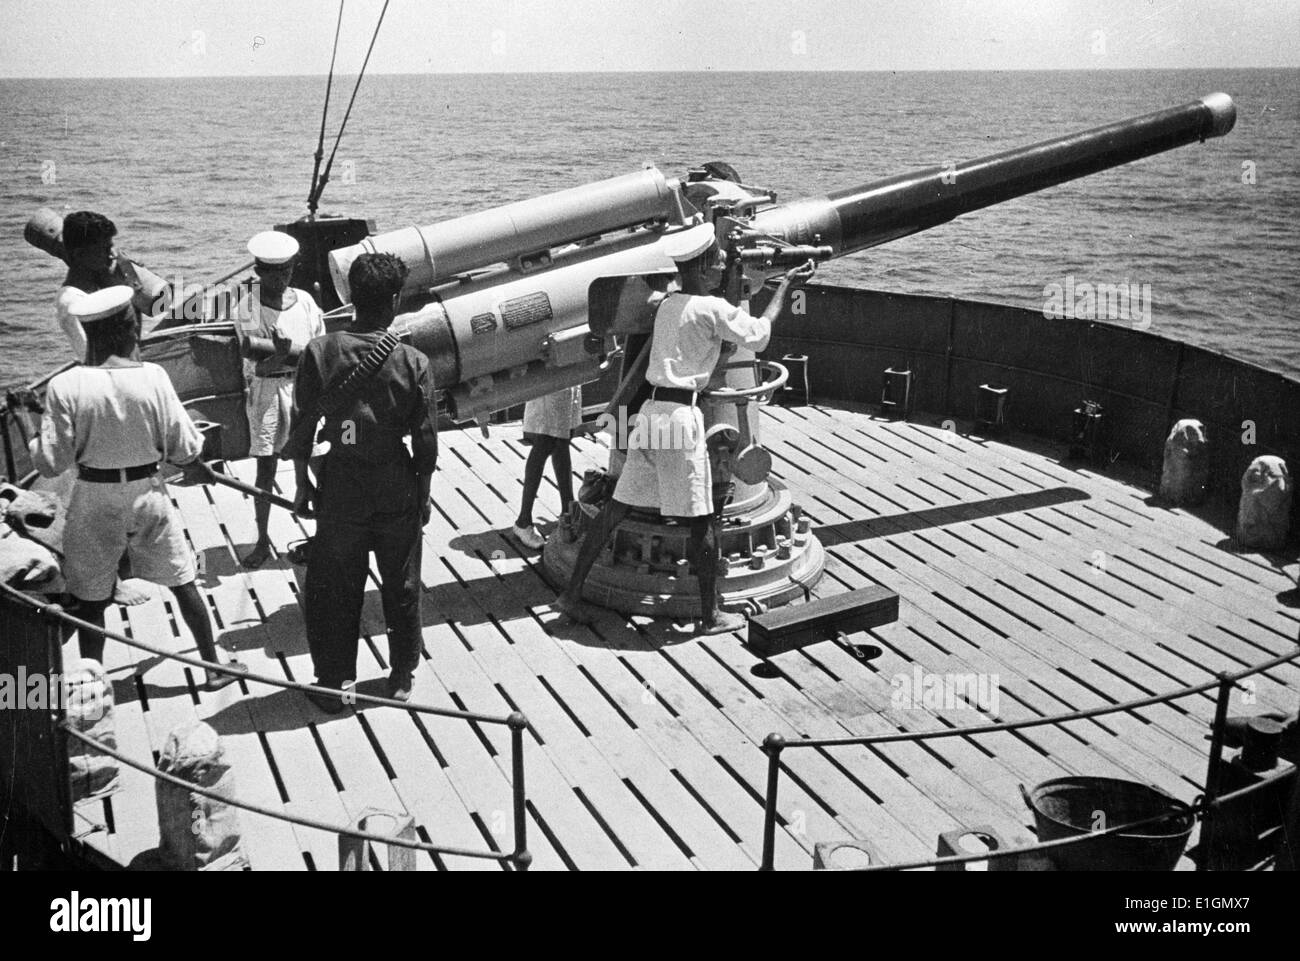 Photographie d'en devoir de marins de la marine indienne Royal en service actif dans l'Est de l'eau. Italien capturé à bord s'avère souvent ces navires se sont engagés dans une action réussie de la Deuxième Guerre mondiale. Datée 1942 Banque D'Images